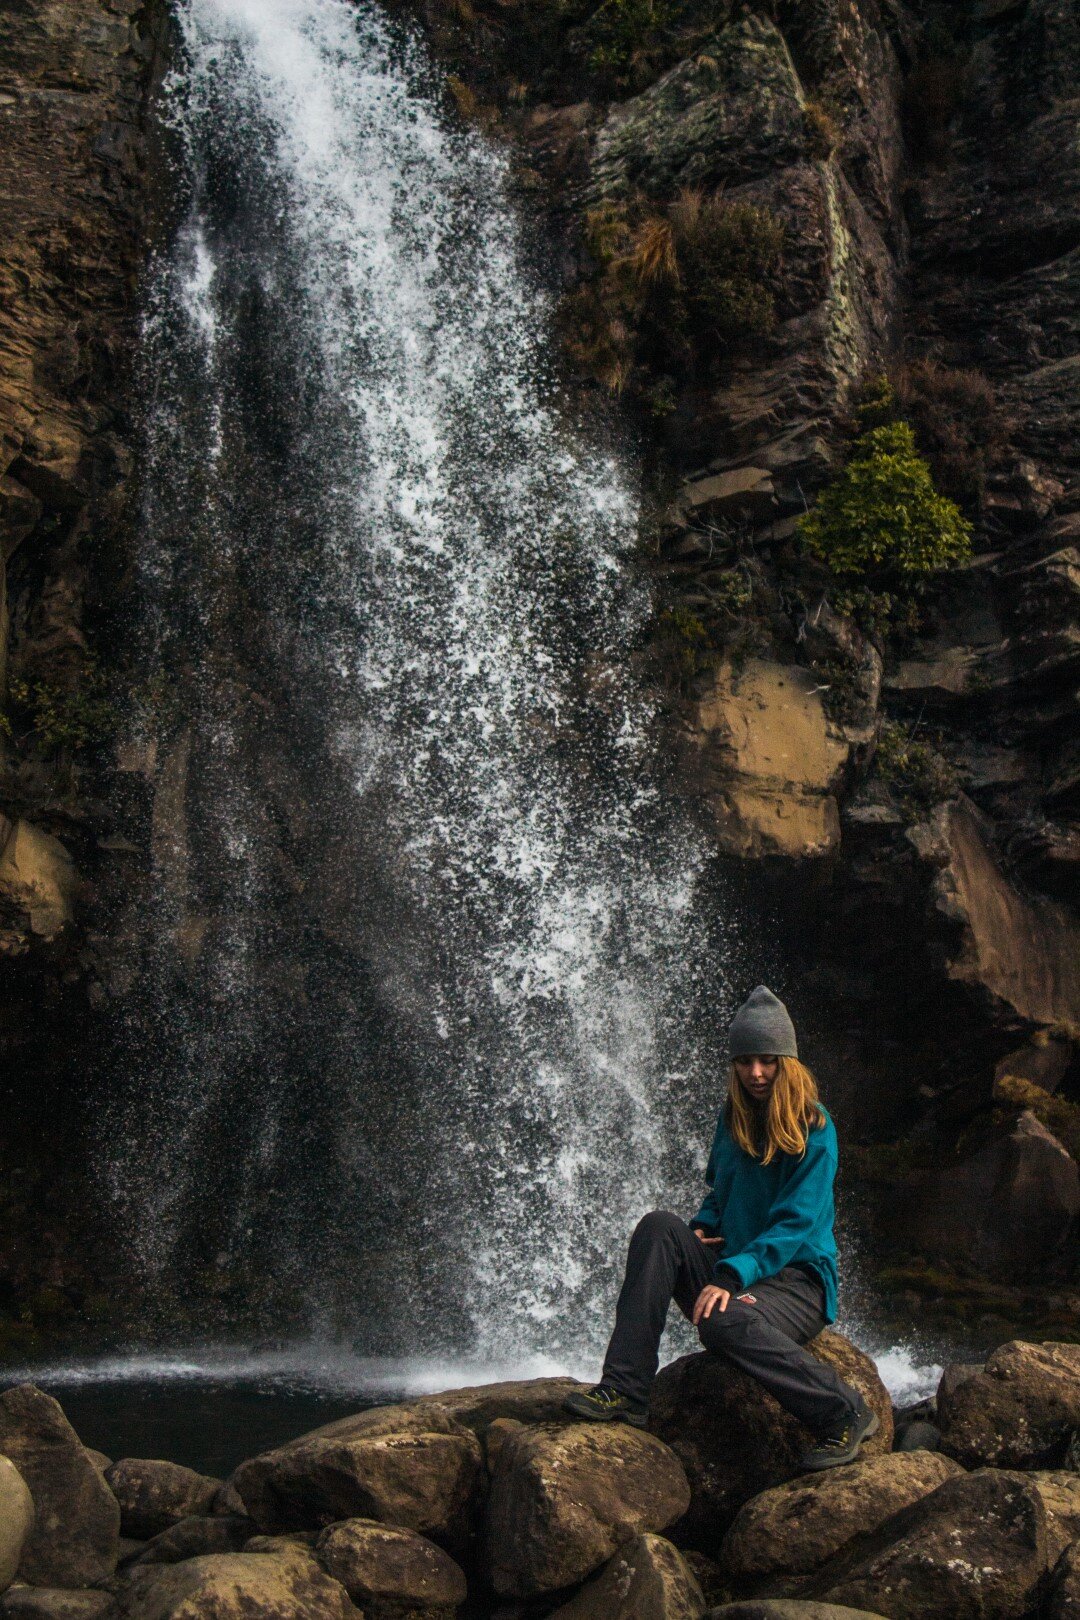 Day 3: The Taranaki Falls